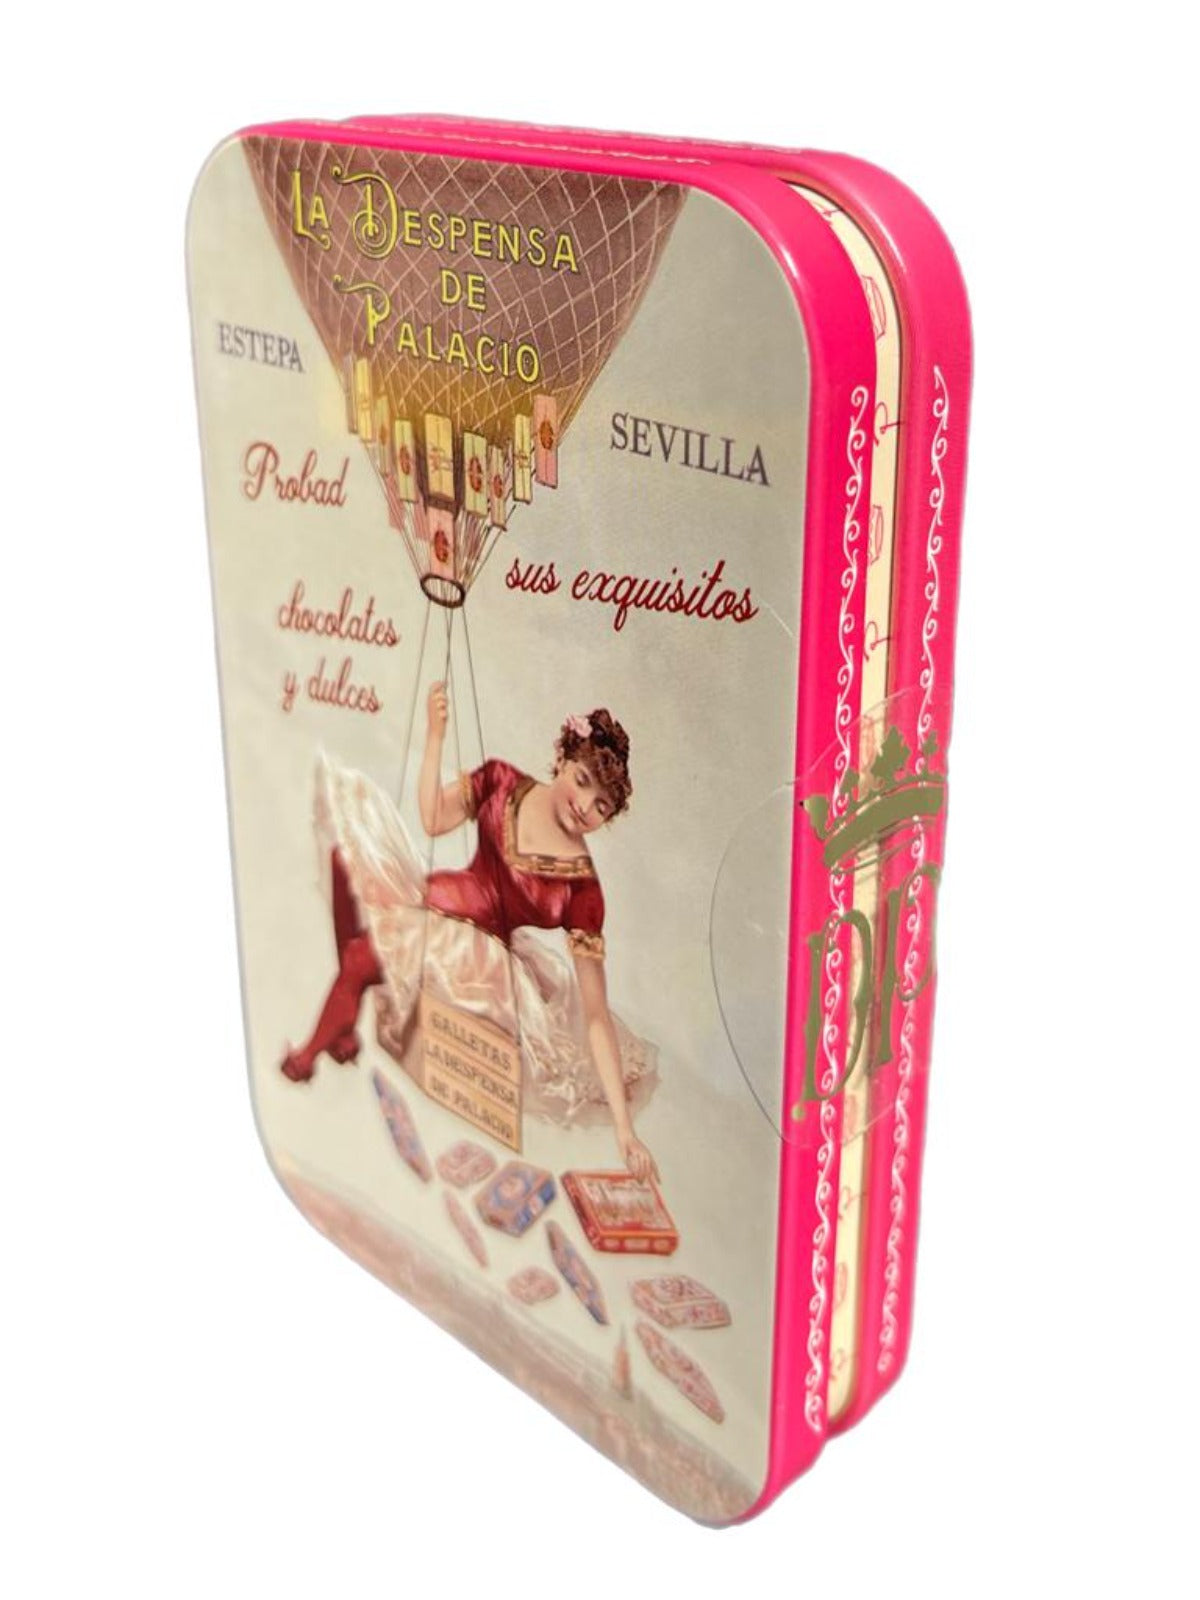 La Despensa de Palacio Canalillos Spanish Chocolate Cigars in Decorative Tin—El Globo Aerostatico 65g